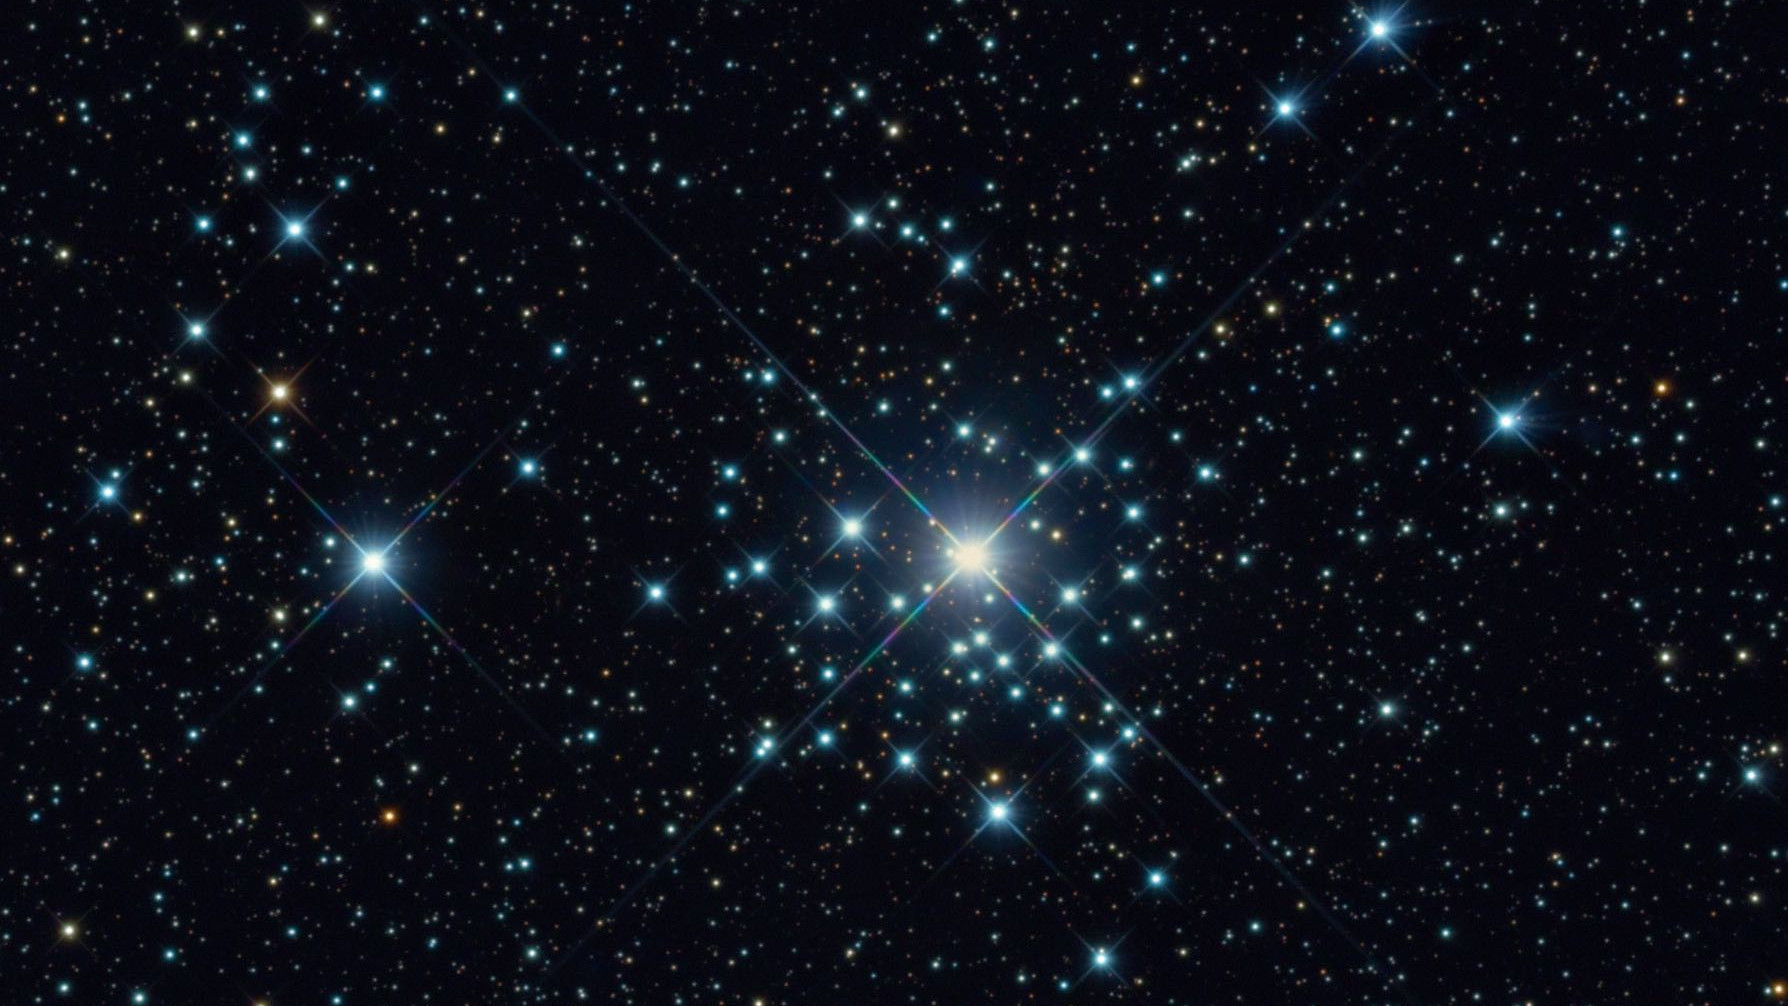 L'ammasso NGC 2362 nella costellazione del Cane Maggiore ripreso con un telescopio RC 20 pollici e lunghezza focale 4492 mm.
Bernhard Hubl il team CEDIC/CCD Guide